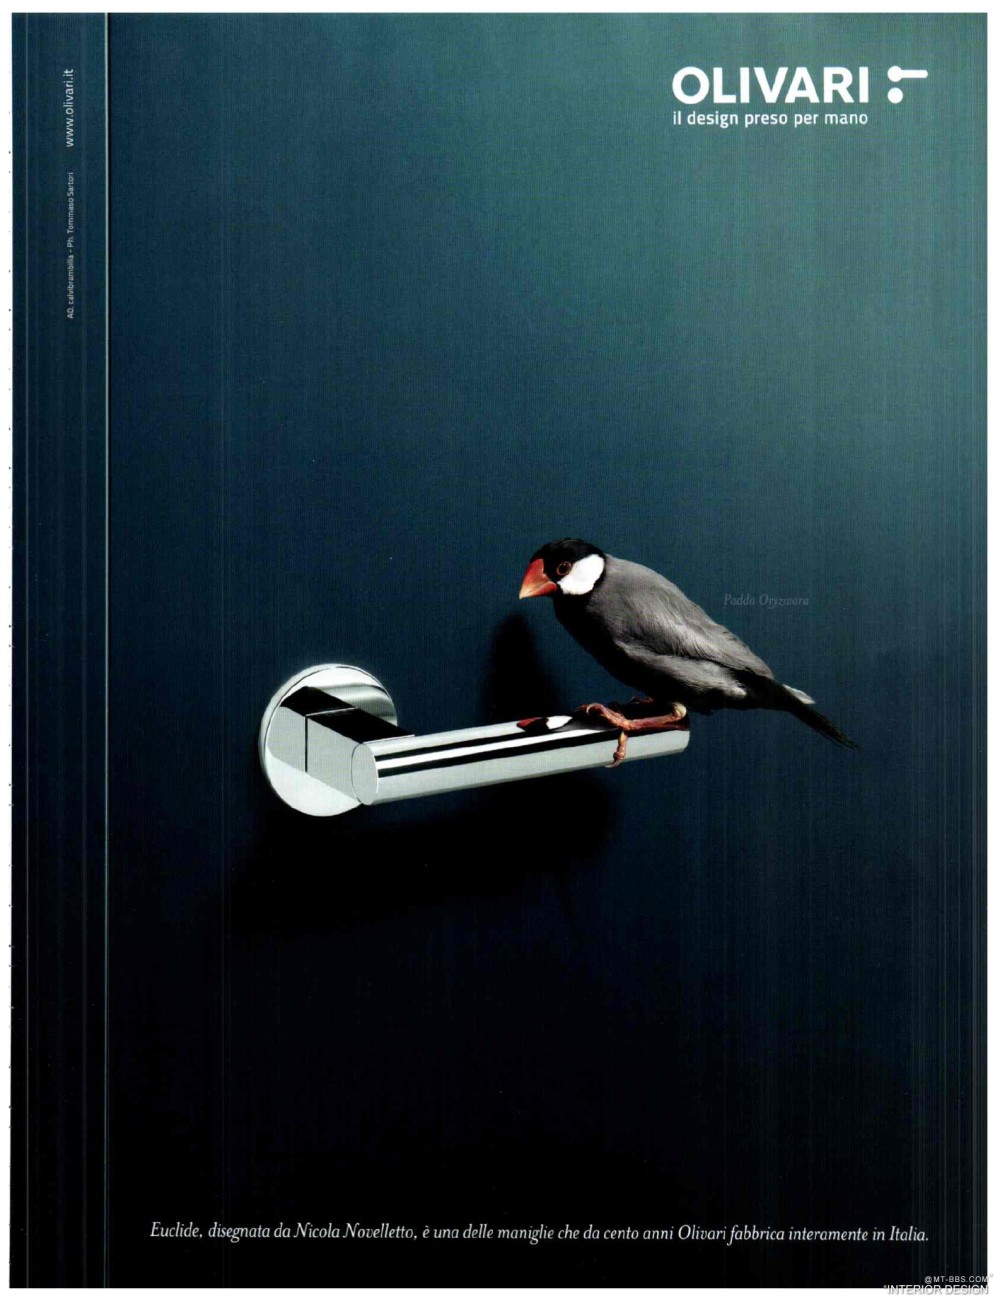 意大利AD 杂志 2012年全年JPG高清版本 全免（上传完毕）_0251.jpg